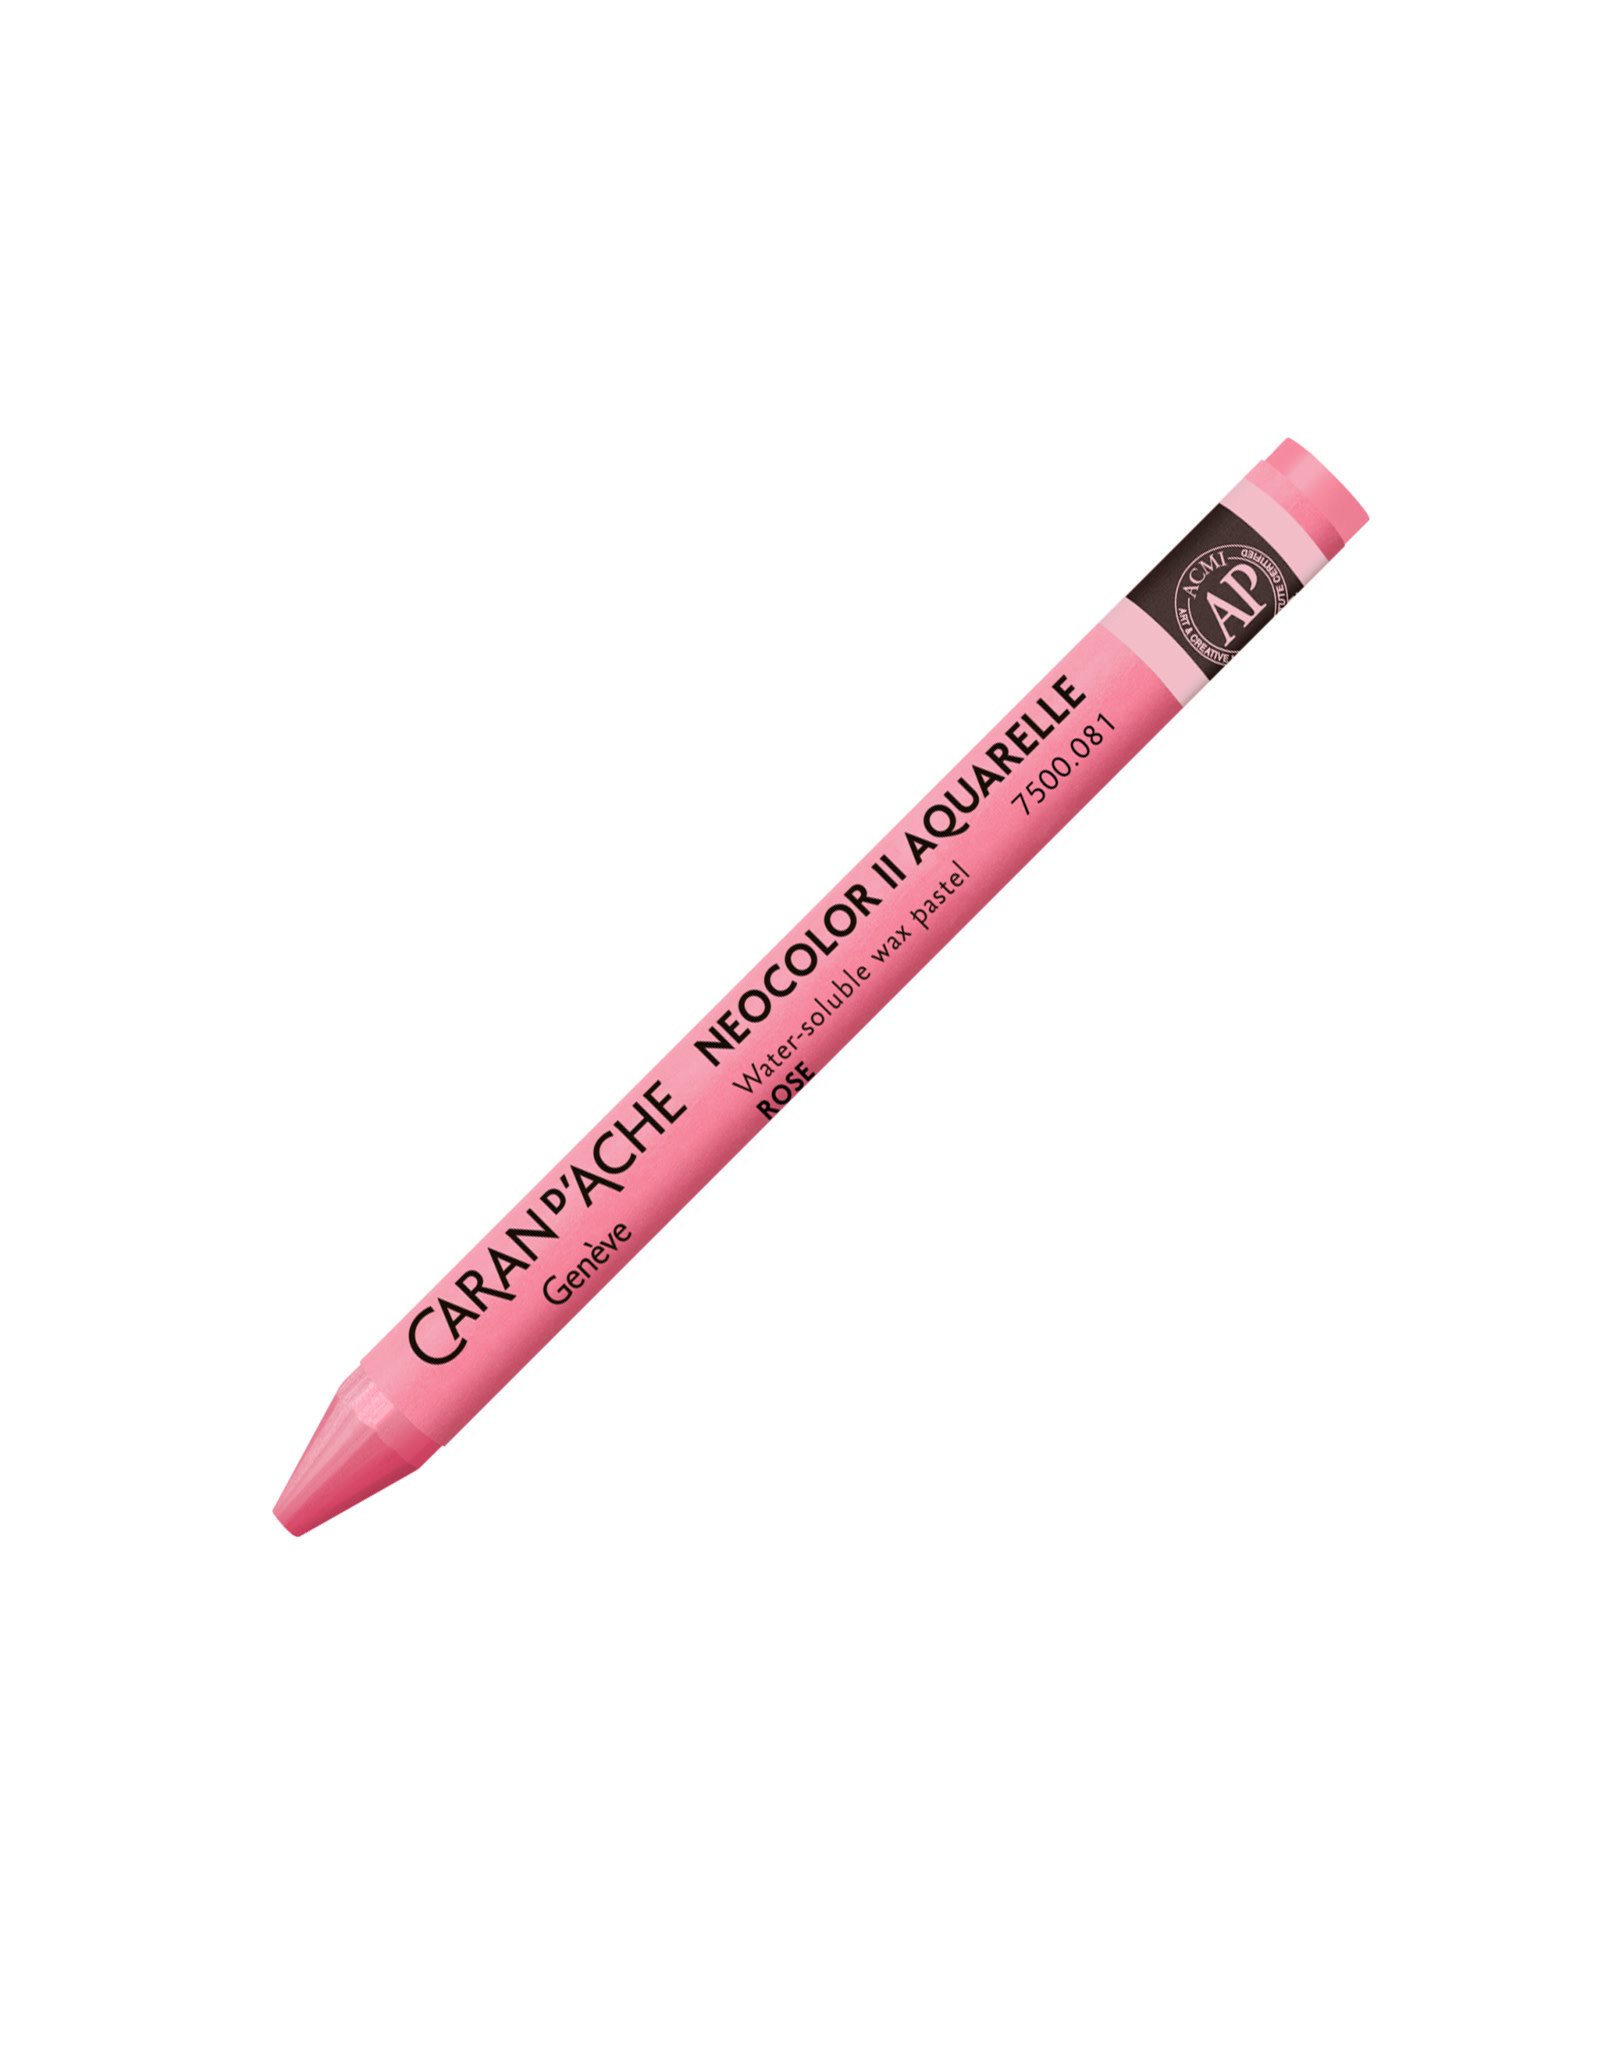 Caran d'Ache Neocolor II Crayons Aquarelle Pink